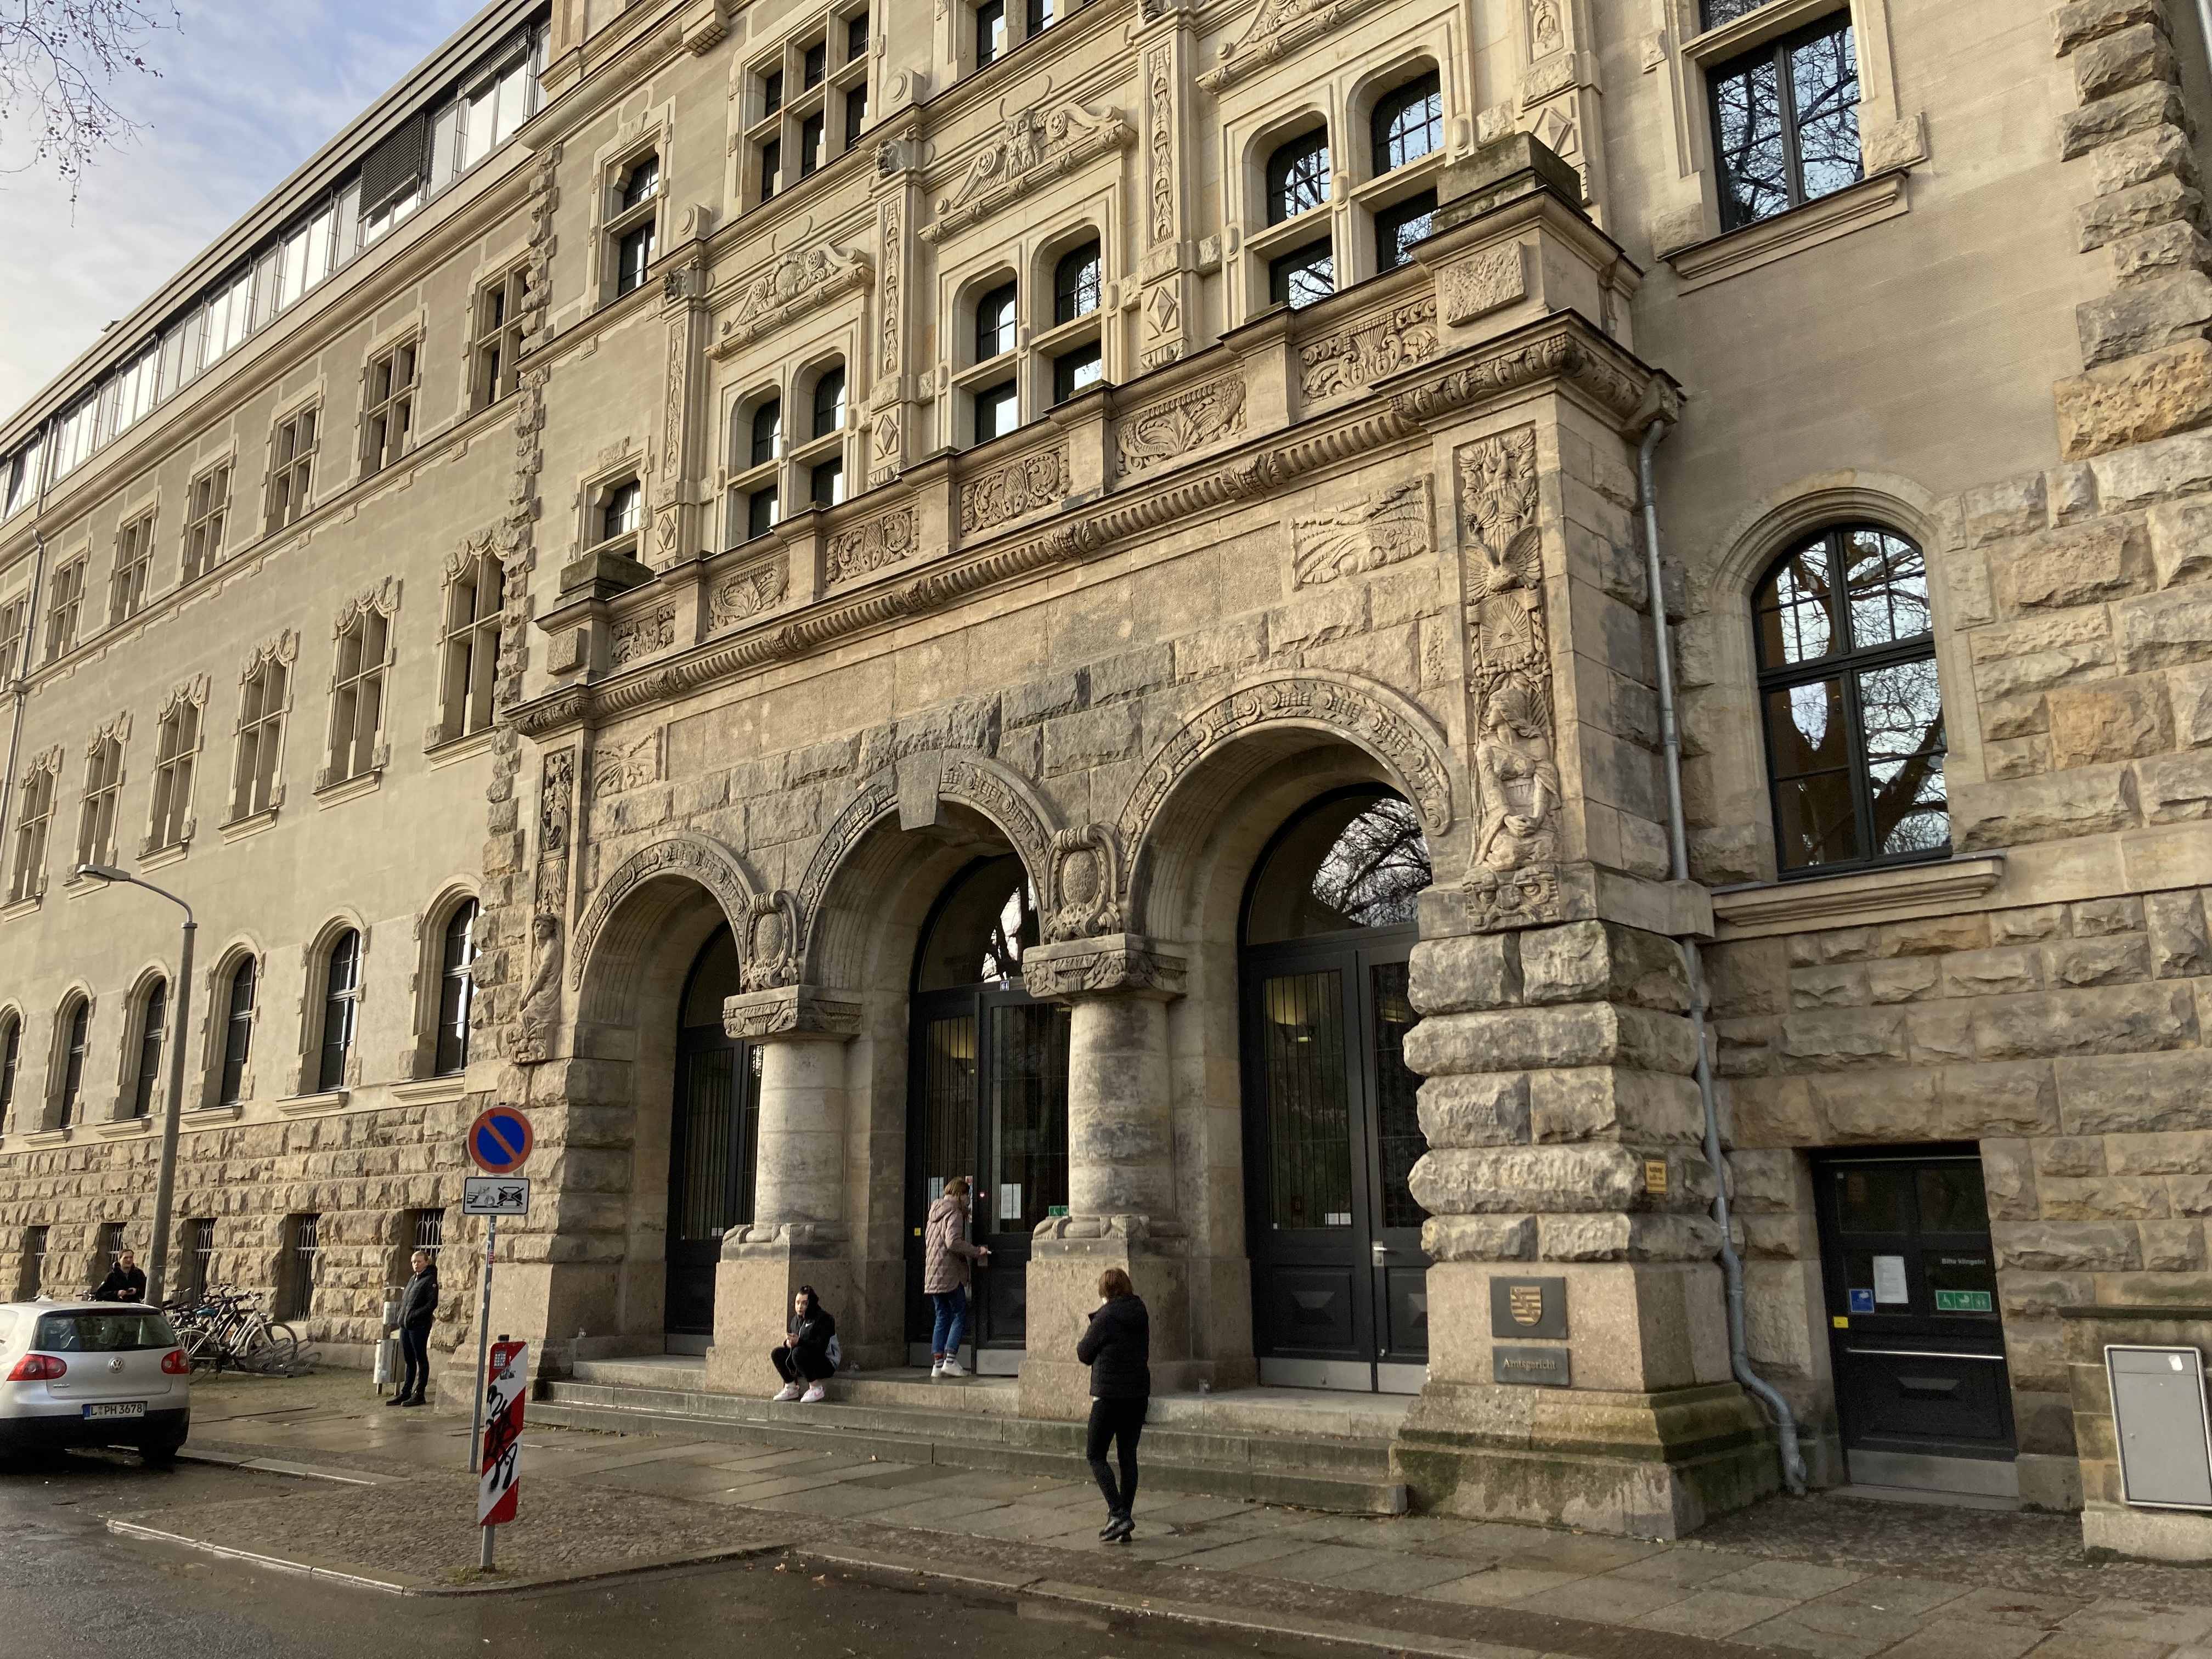   Überfall auf Connewitz: Urteil im Fall Karsten H. gefällt | Ehemaliger Justizvollzugsbeamter zu einem Jahr und drei Monaten auf Bewährung verurteilt  